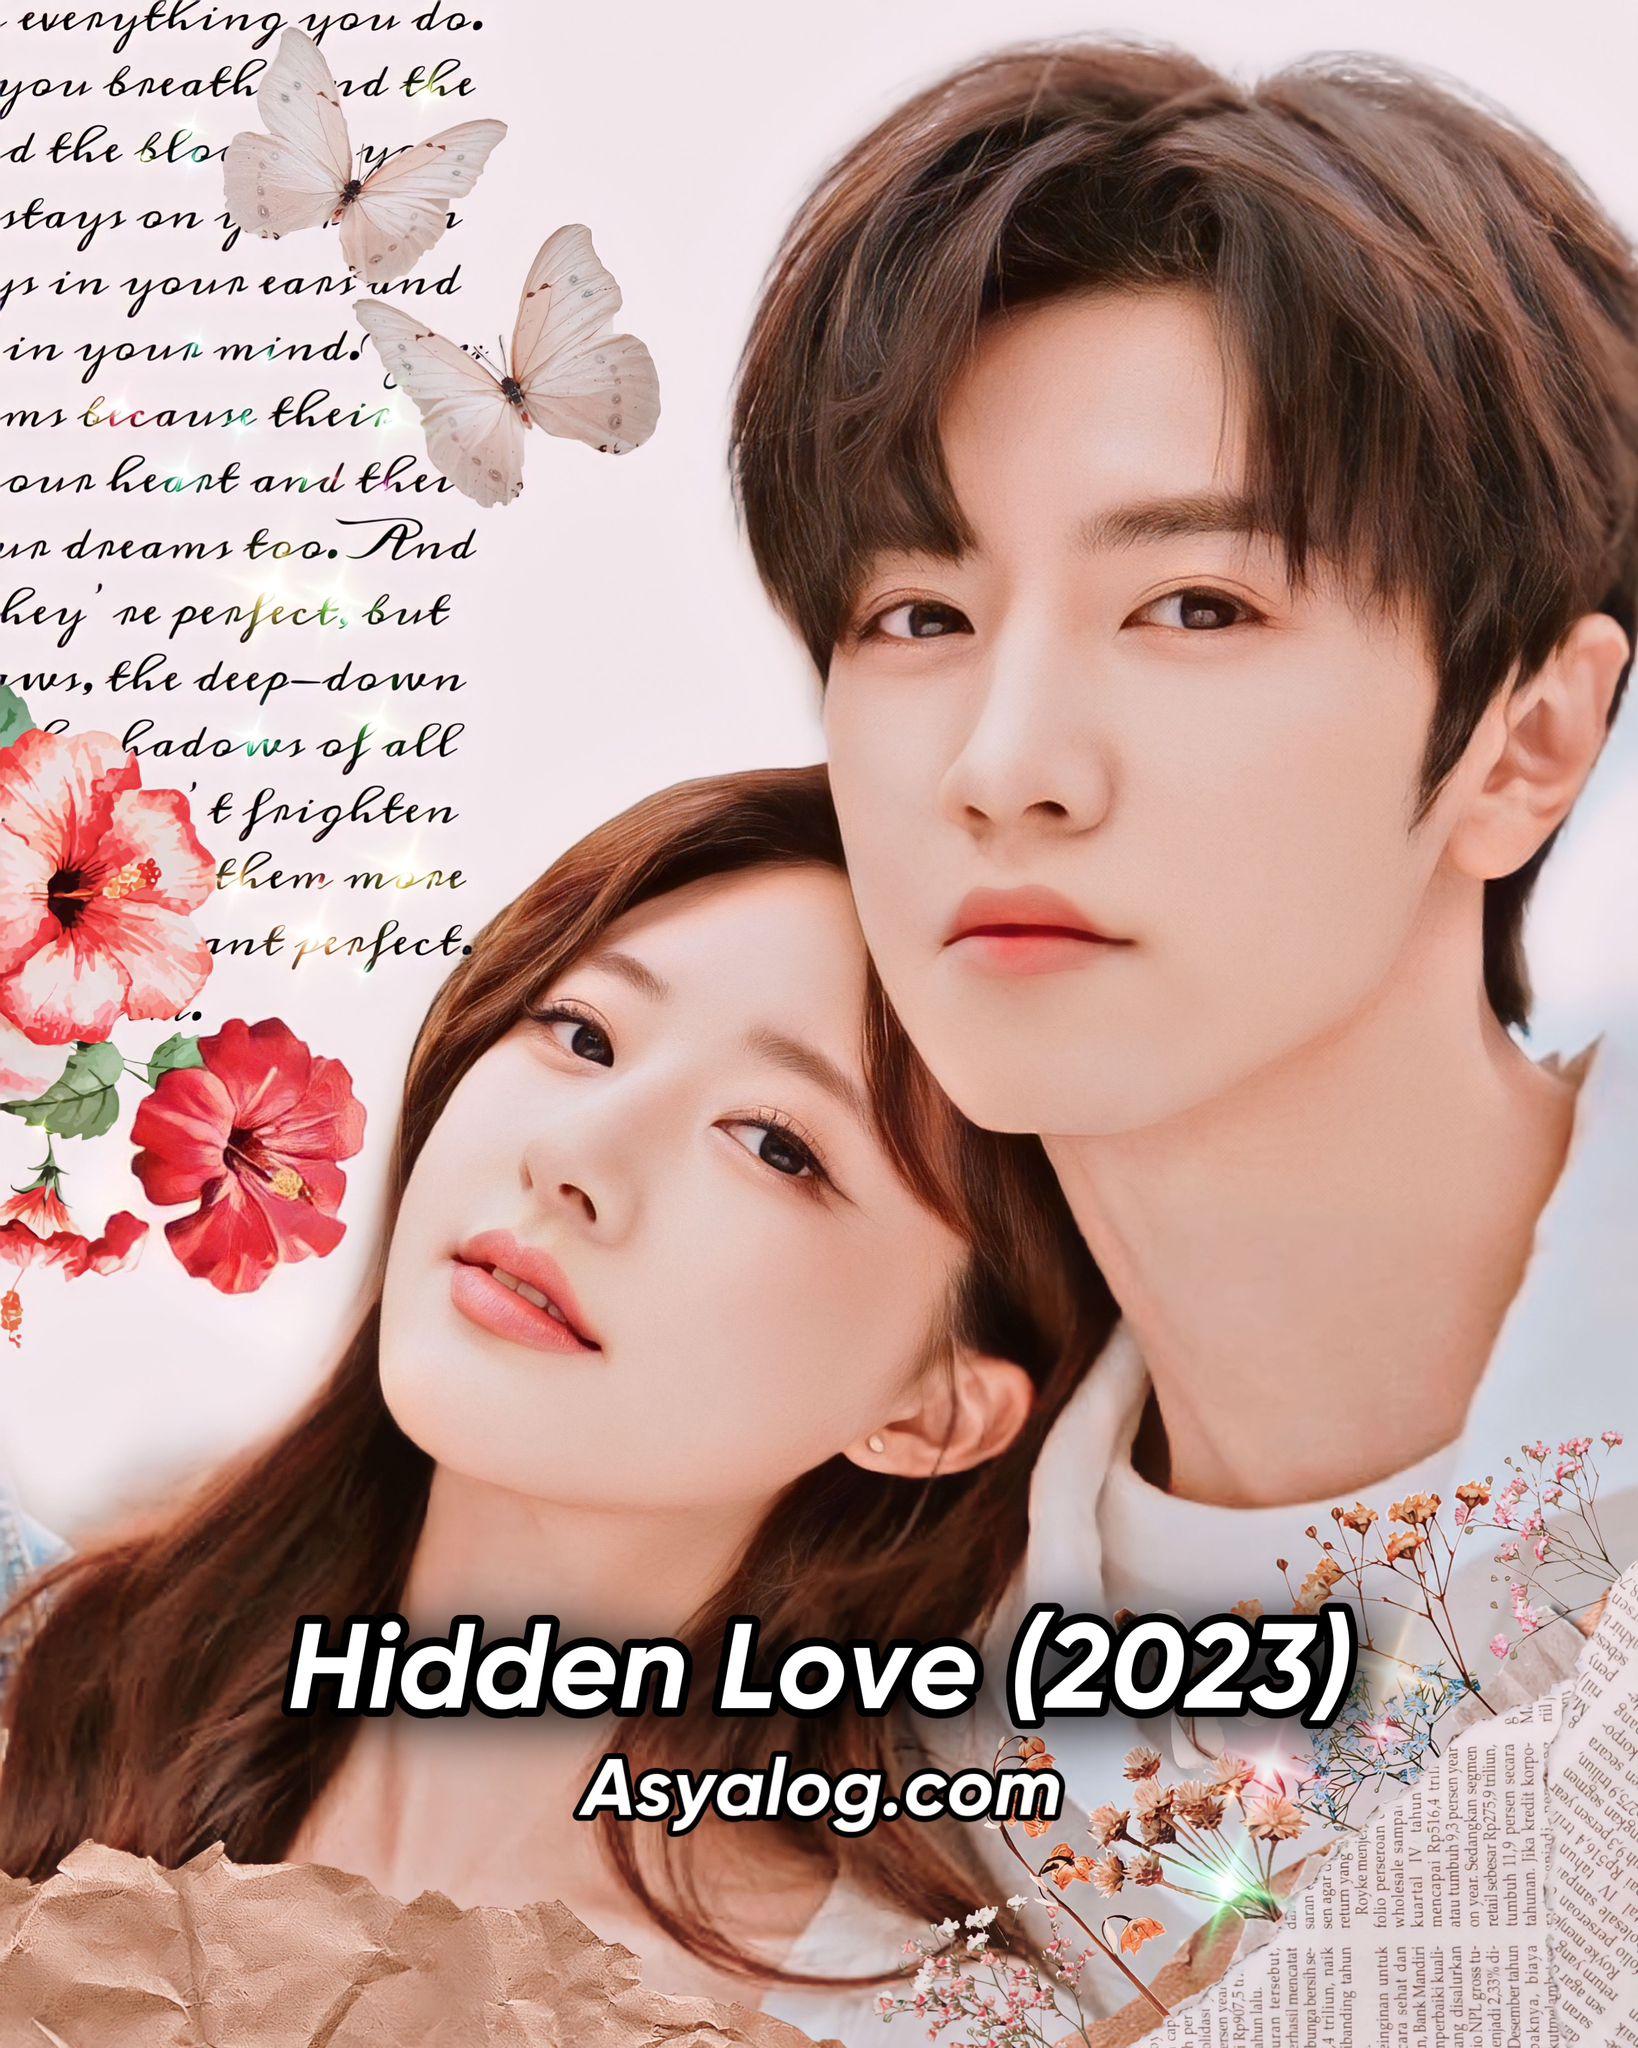 Hidden Love (2023) Asyalog